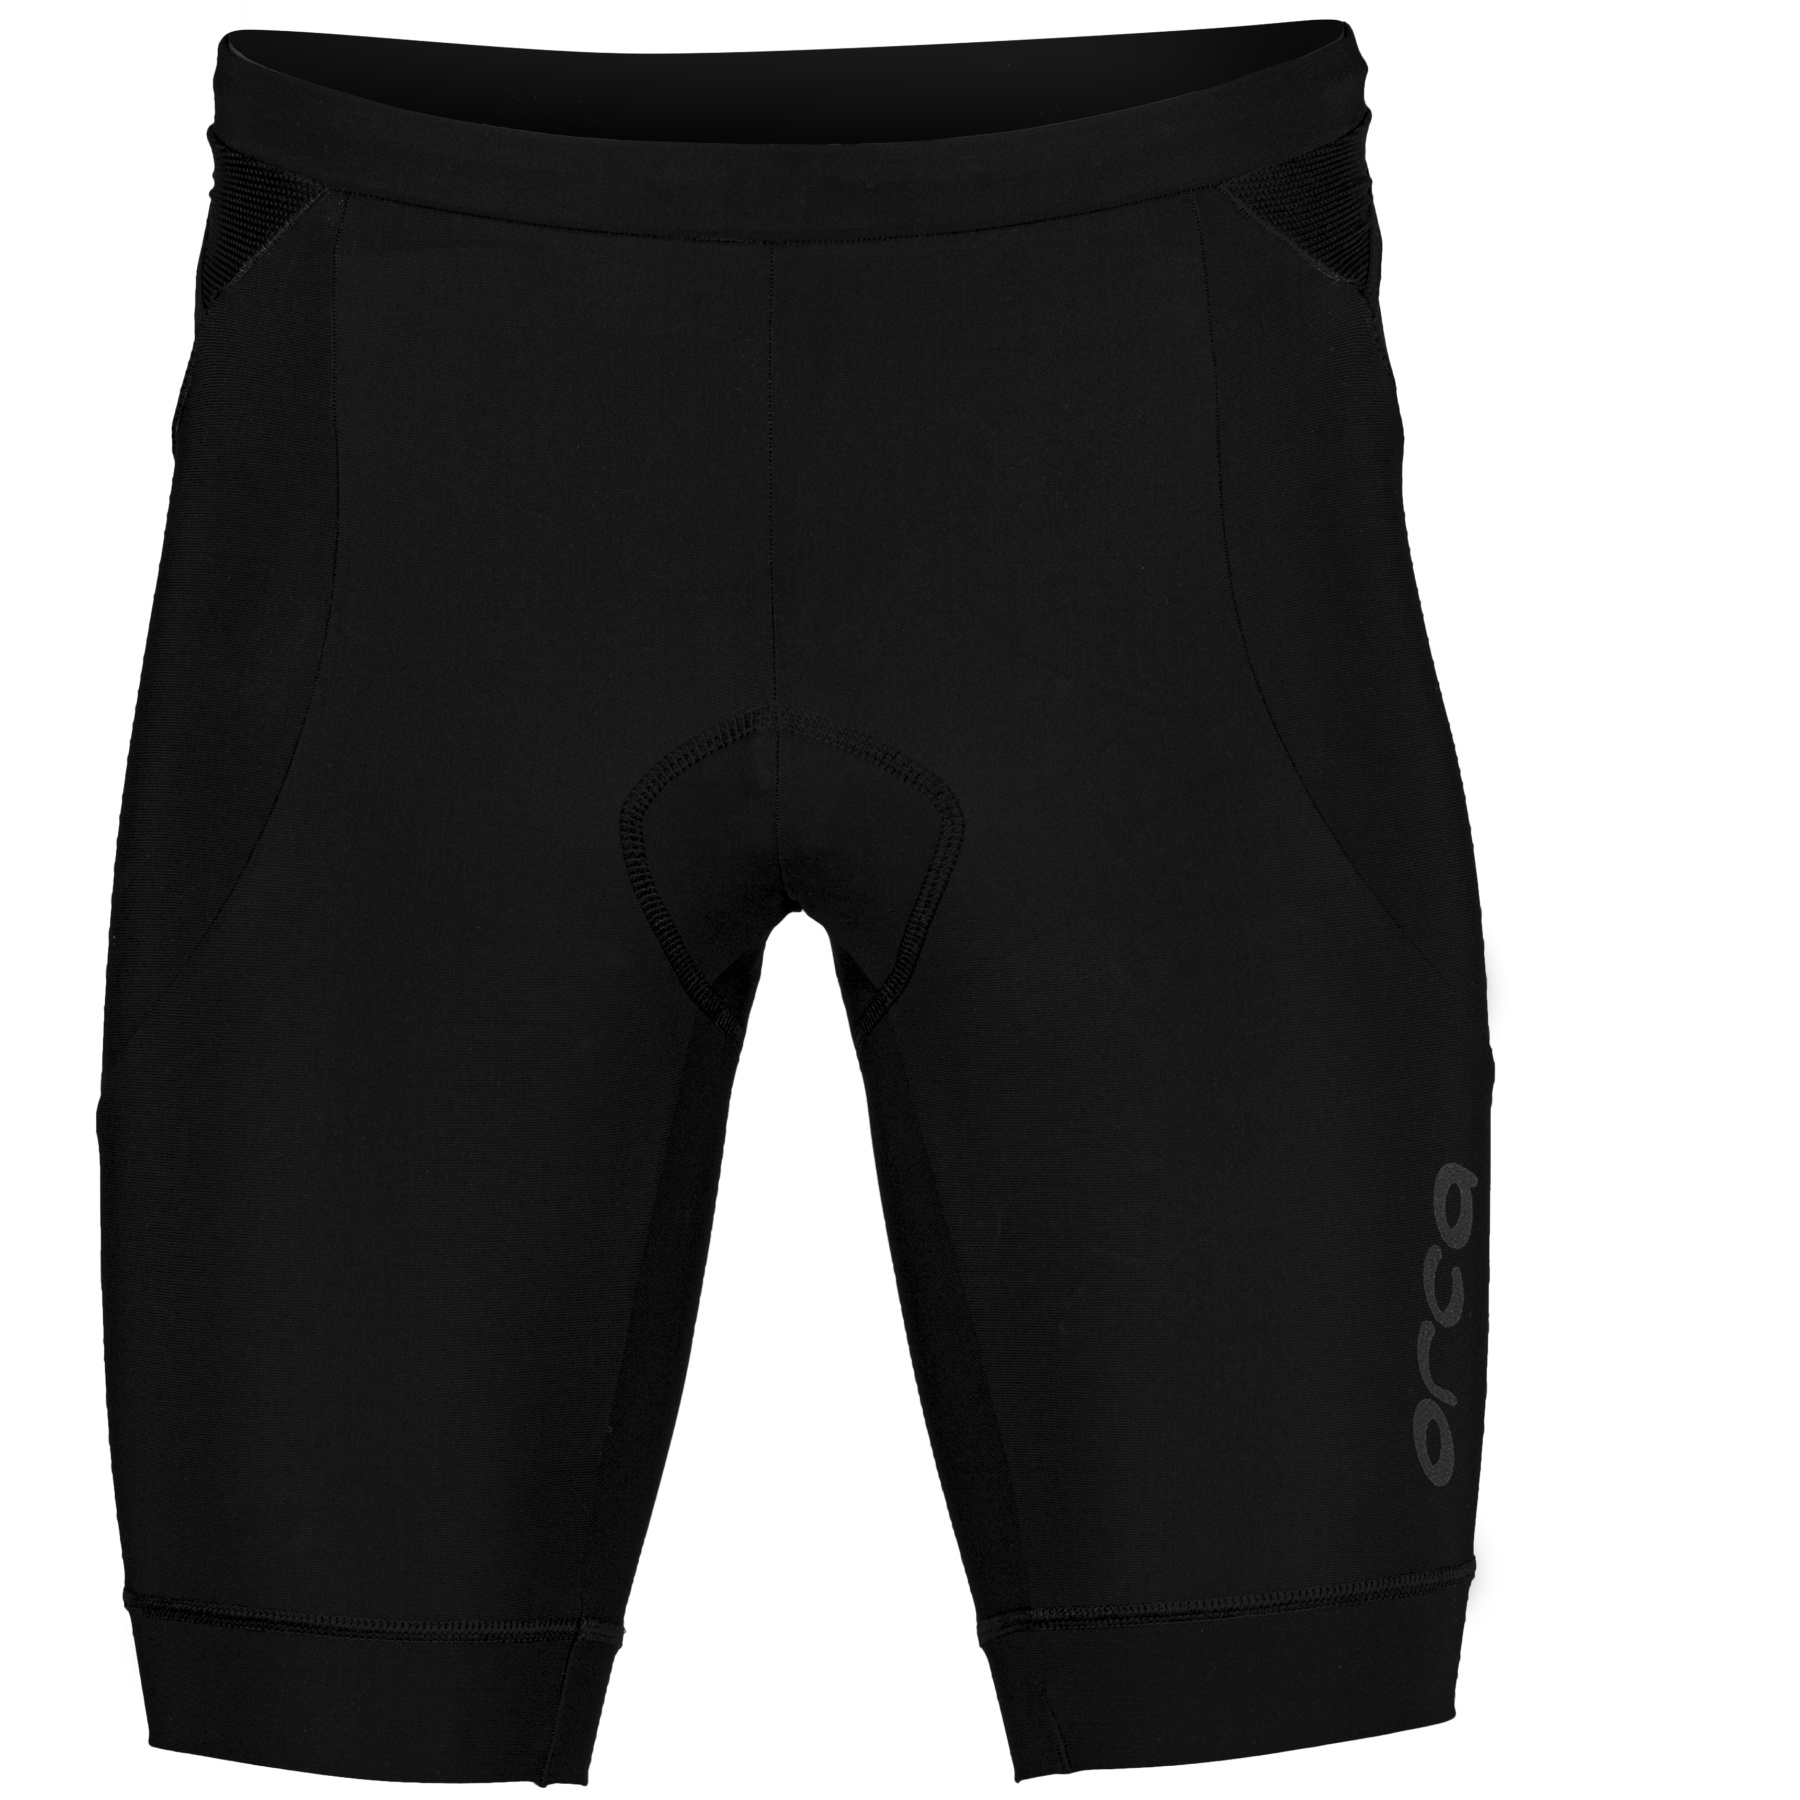 Produktbild von Orca Athlex Tri Shorts - schwarz